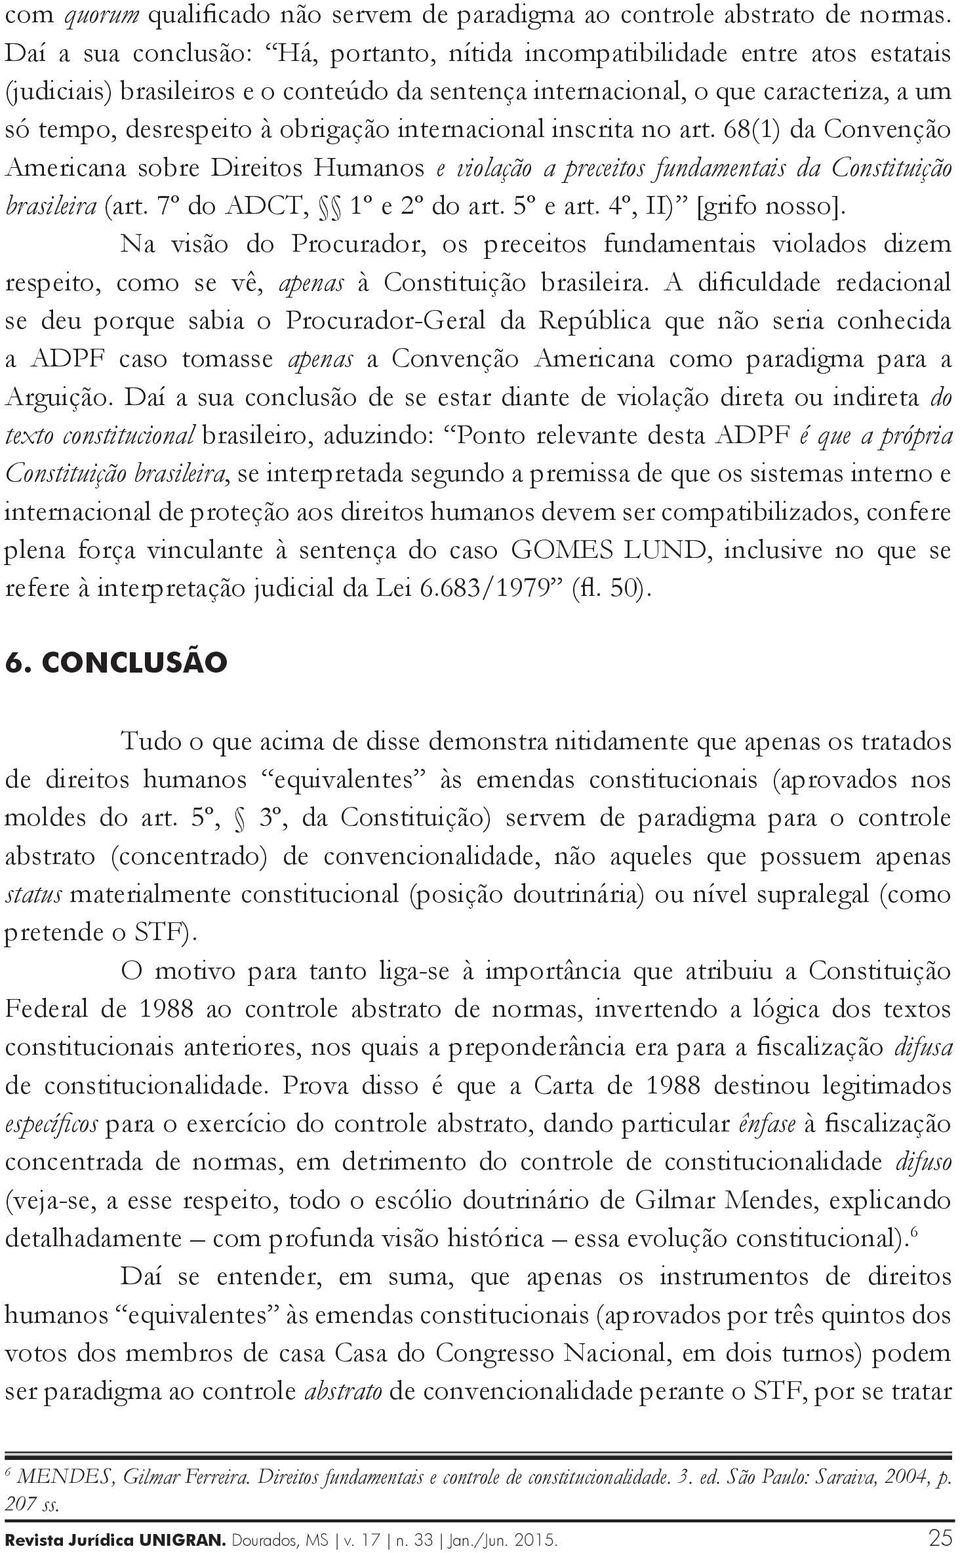 obrigação internacional inscrita no art. 68(1) da Convenção Americana sobre Direitos Humanos e violação a preceitos fundamentais da Constituição brasileira (art. 7º do ADCT, 1º e 2º do art. 5º e art.